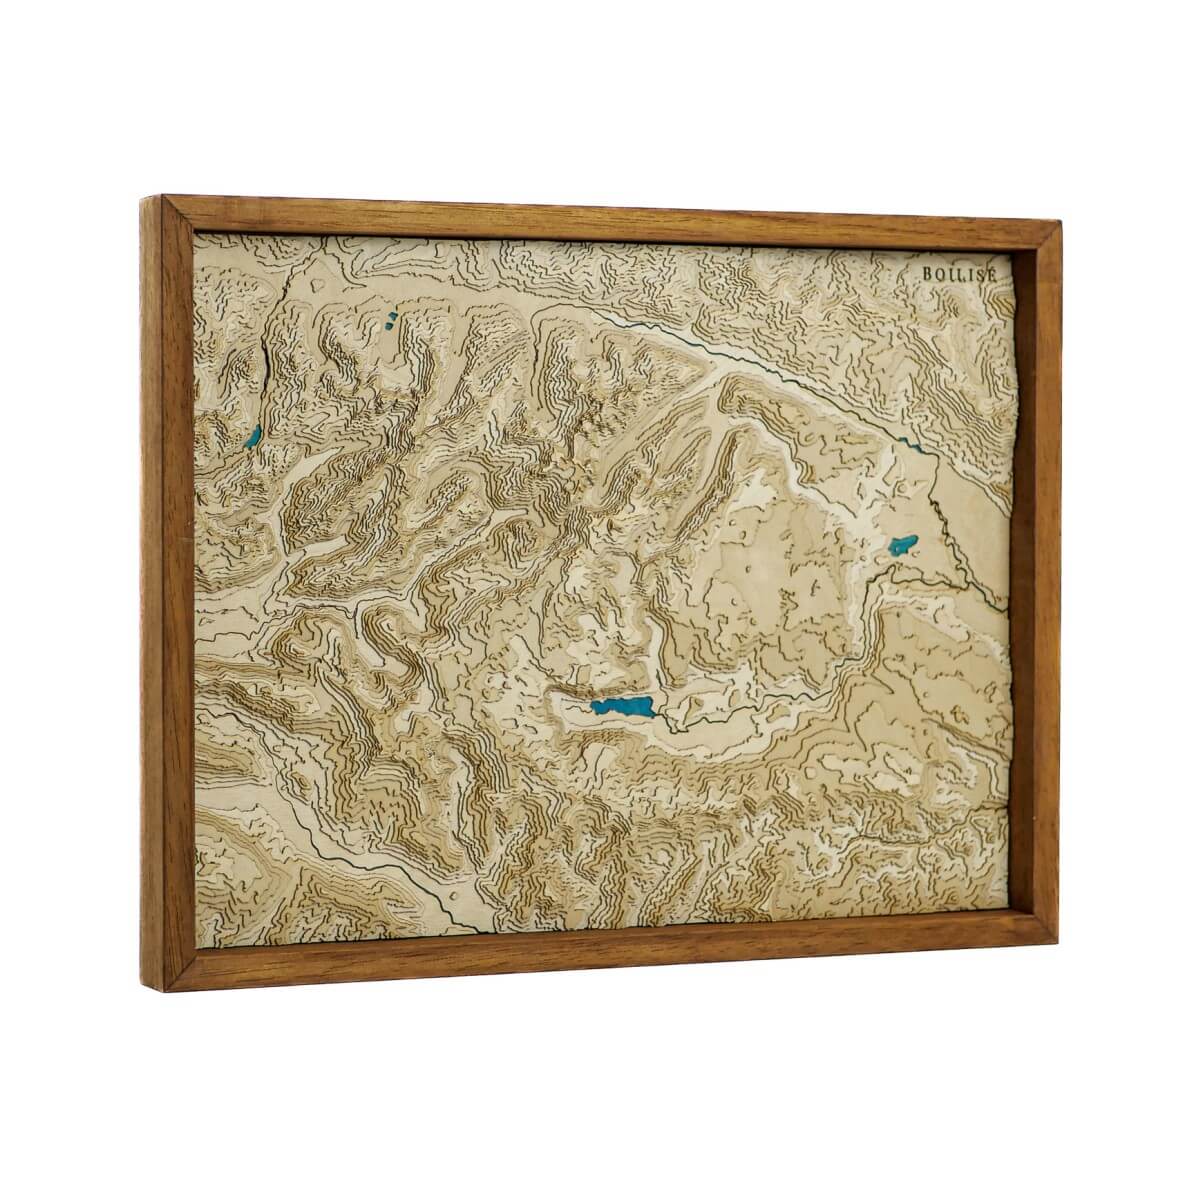 Explorez les sommets et les vallées des Alpes Juliennes grâce à notre carte topographique en bois et en relief